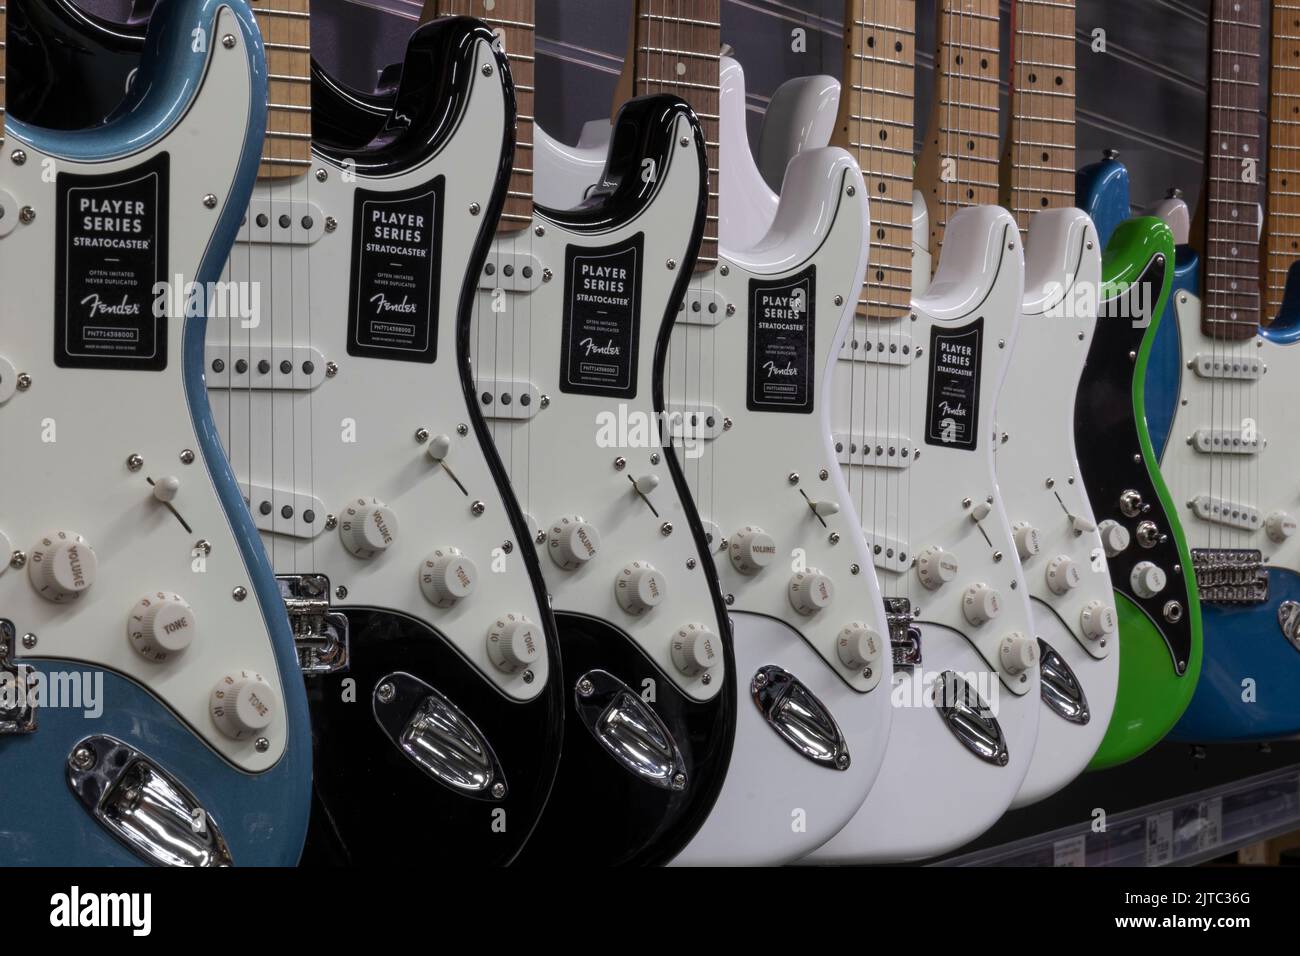 Muncie - Circa août 2022: Fender Stratocaster guitare exposition dans un magasin de musique. Les strates sont mondialement connues pour leur son propre et original. Banque D'Images